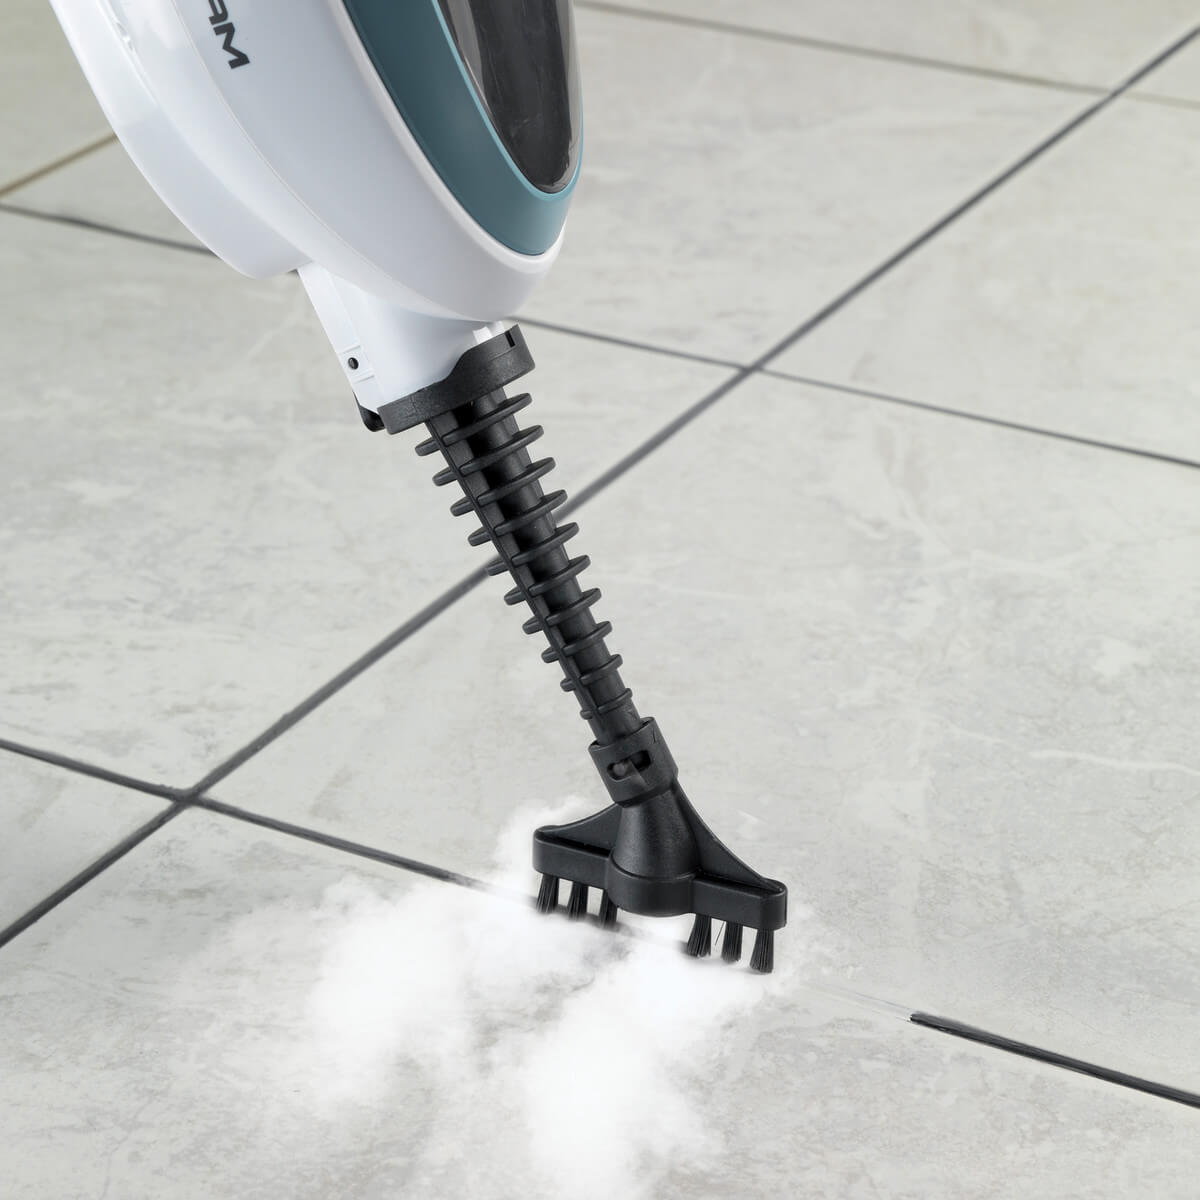 Igienizzare i pavimenti con il pulitore a vapore - Ricomincio da quattro